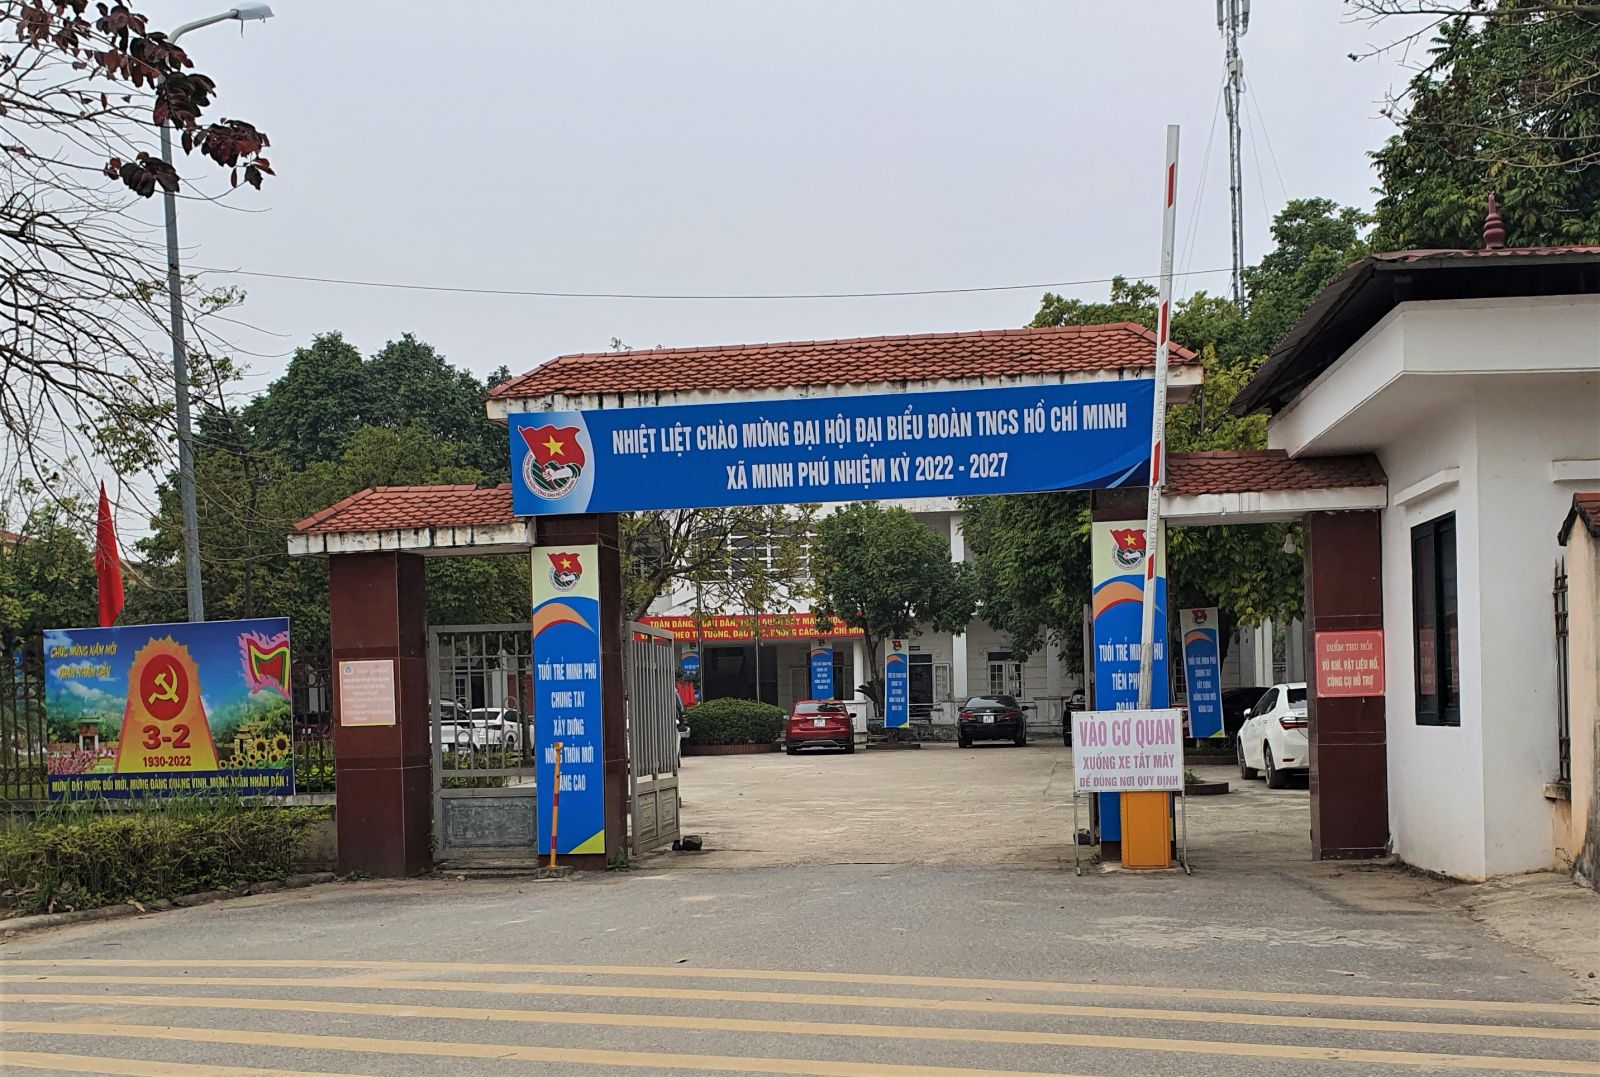 Xây dựng trái phép ở Minh Phú Sóc Sơn